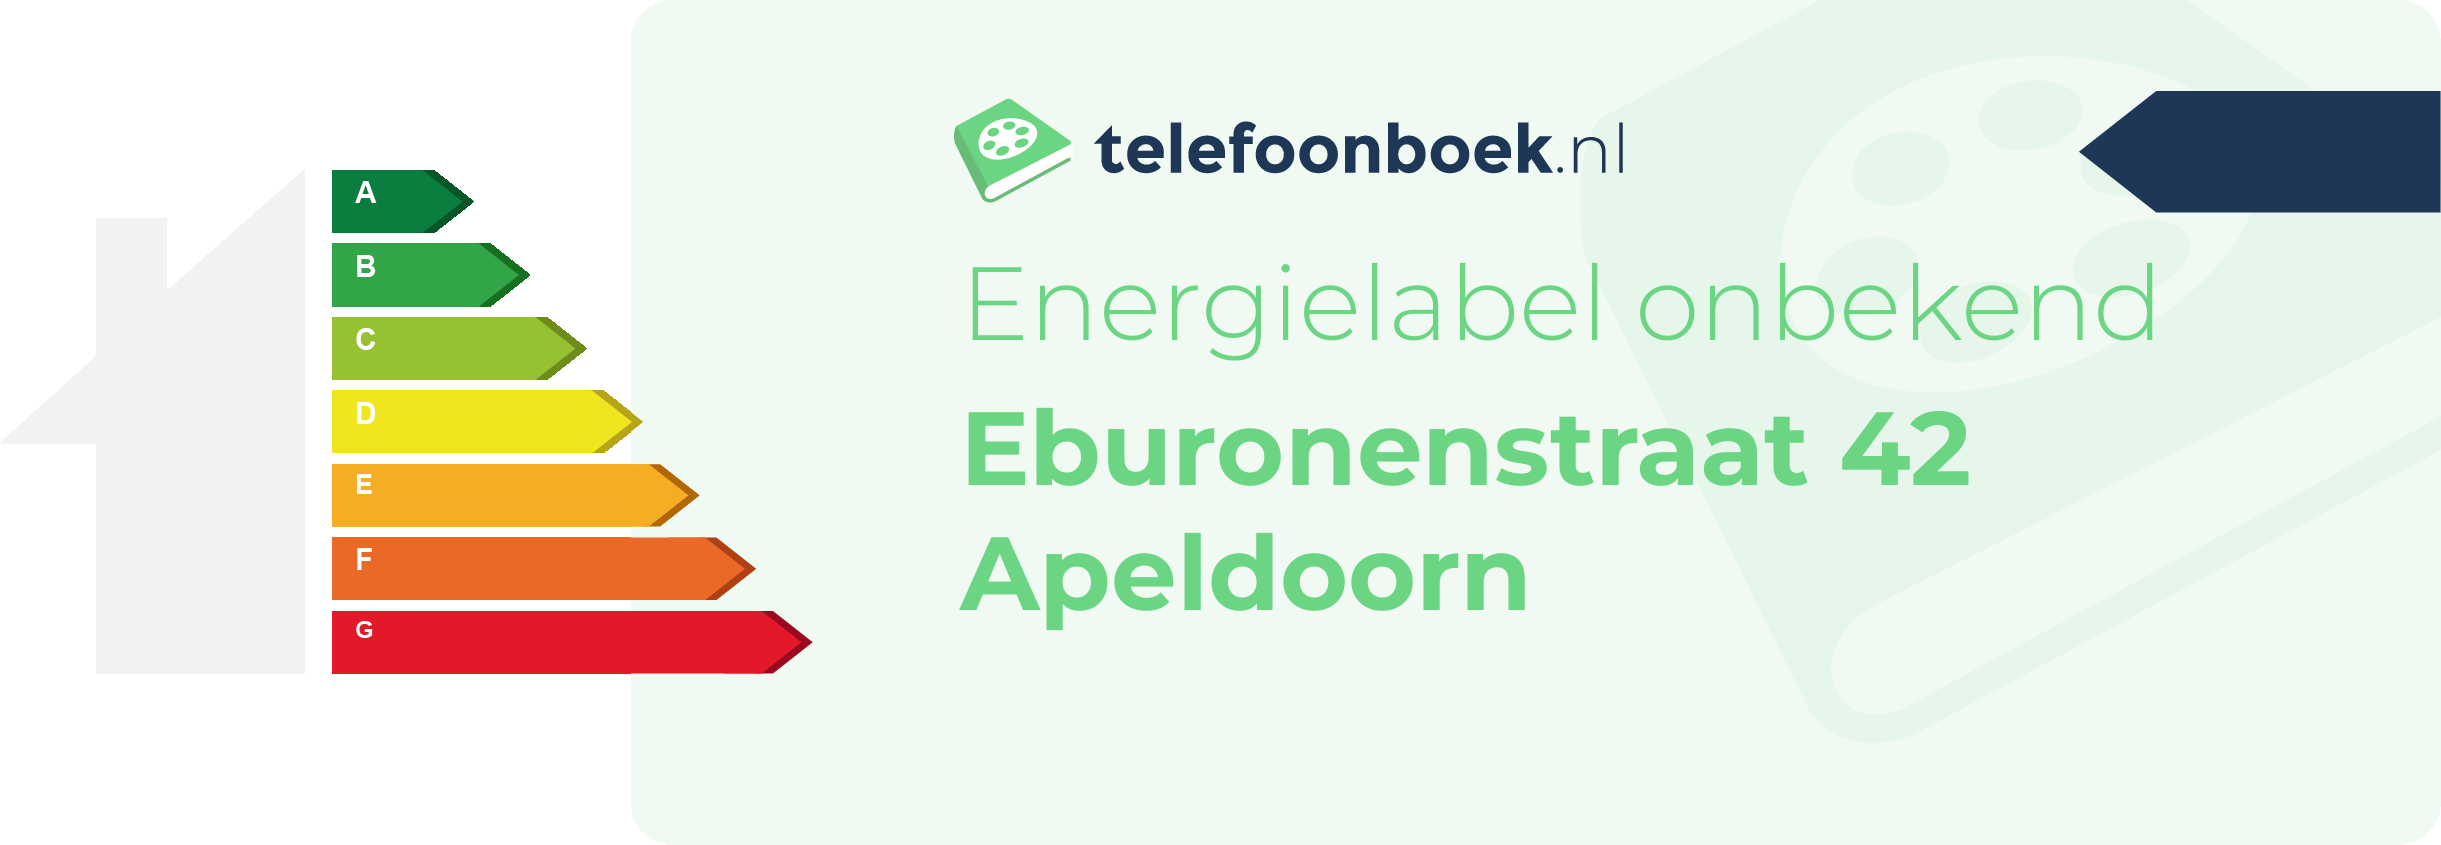 Energielabel Eburonenstraat 42 Apeldoorn